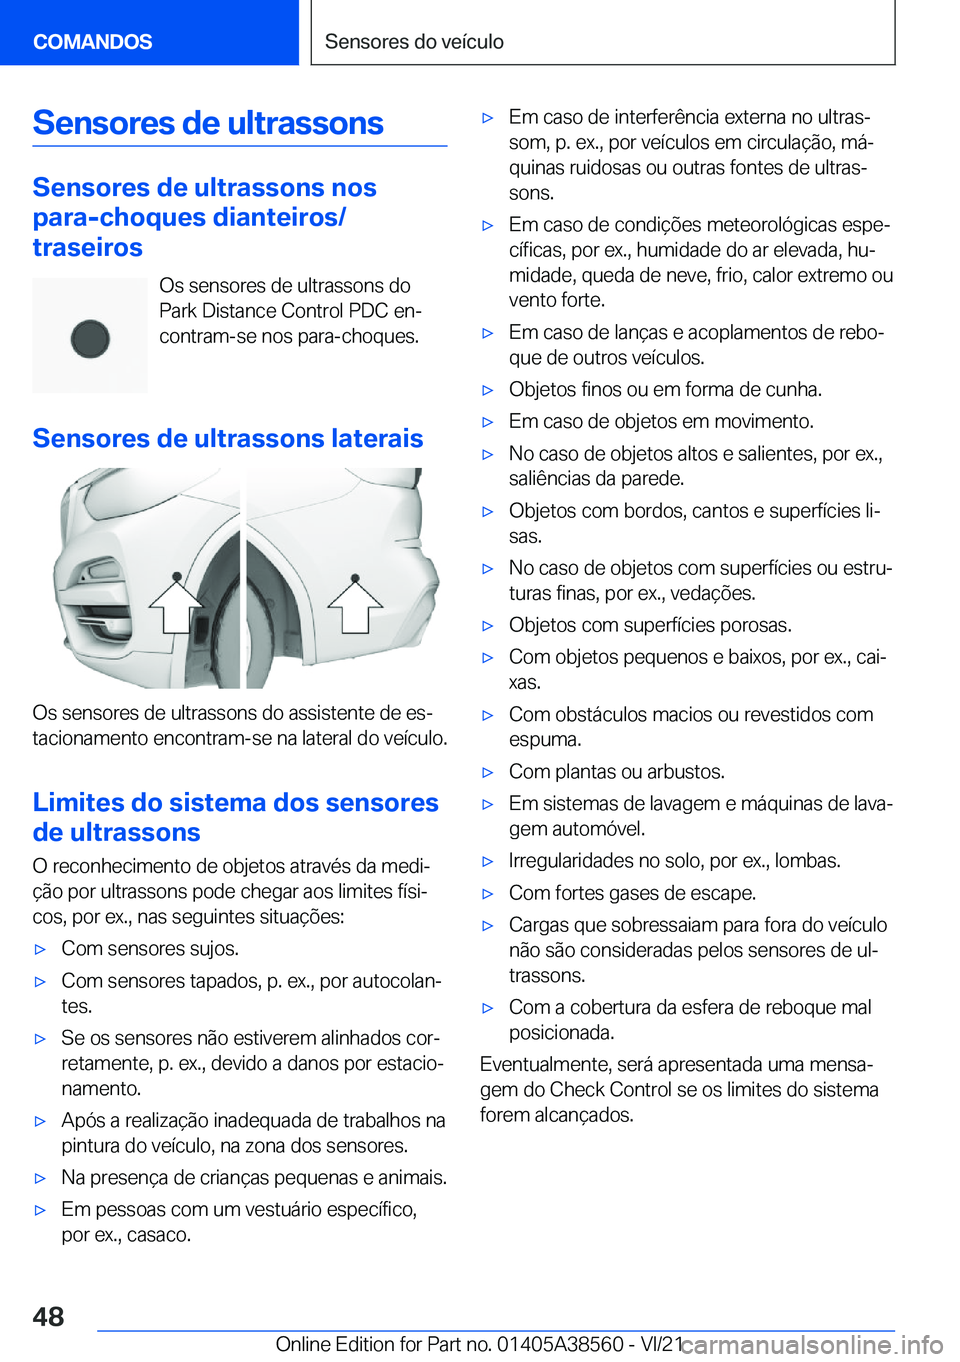 BMW X6 2022  Manual do condutor (in Portuguese) �S�e�n�s�o�r�e�s��d�e��u�l�t�r�a�s�s�o�n�s
�S�e�n�s�o�r�e�s��d�e��u�l�t�r�a�s�s�o�n�s��n�o�s
�p�a�r�a�-�c�h�o�q�u�e�s��d�i�a�n�t�e�i�r�o�s�/
�t�r�a�s�e�i�r�o�s
�O�s��s�e�n�s�o�r�e�s��d�e��u�l